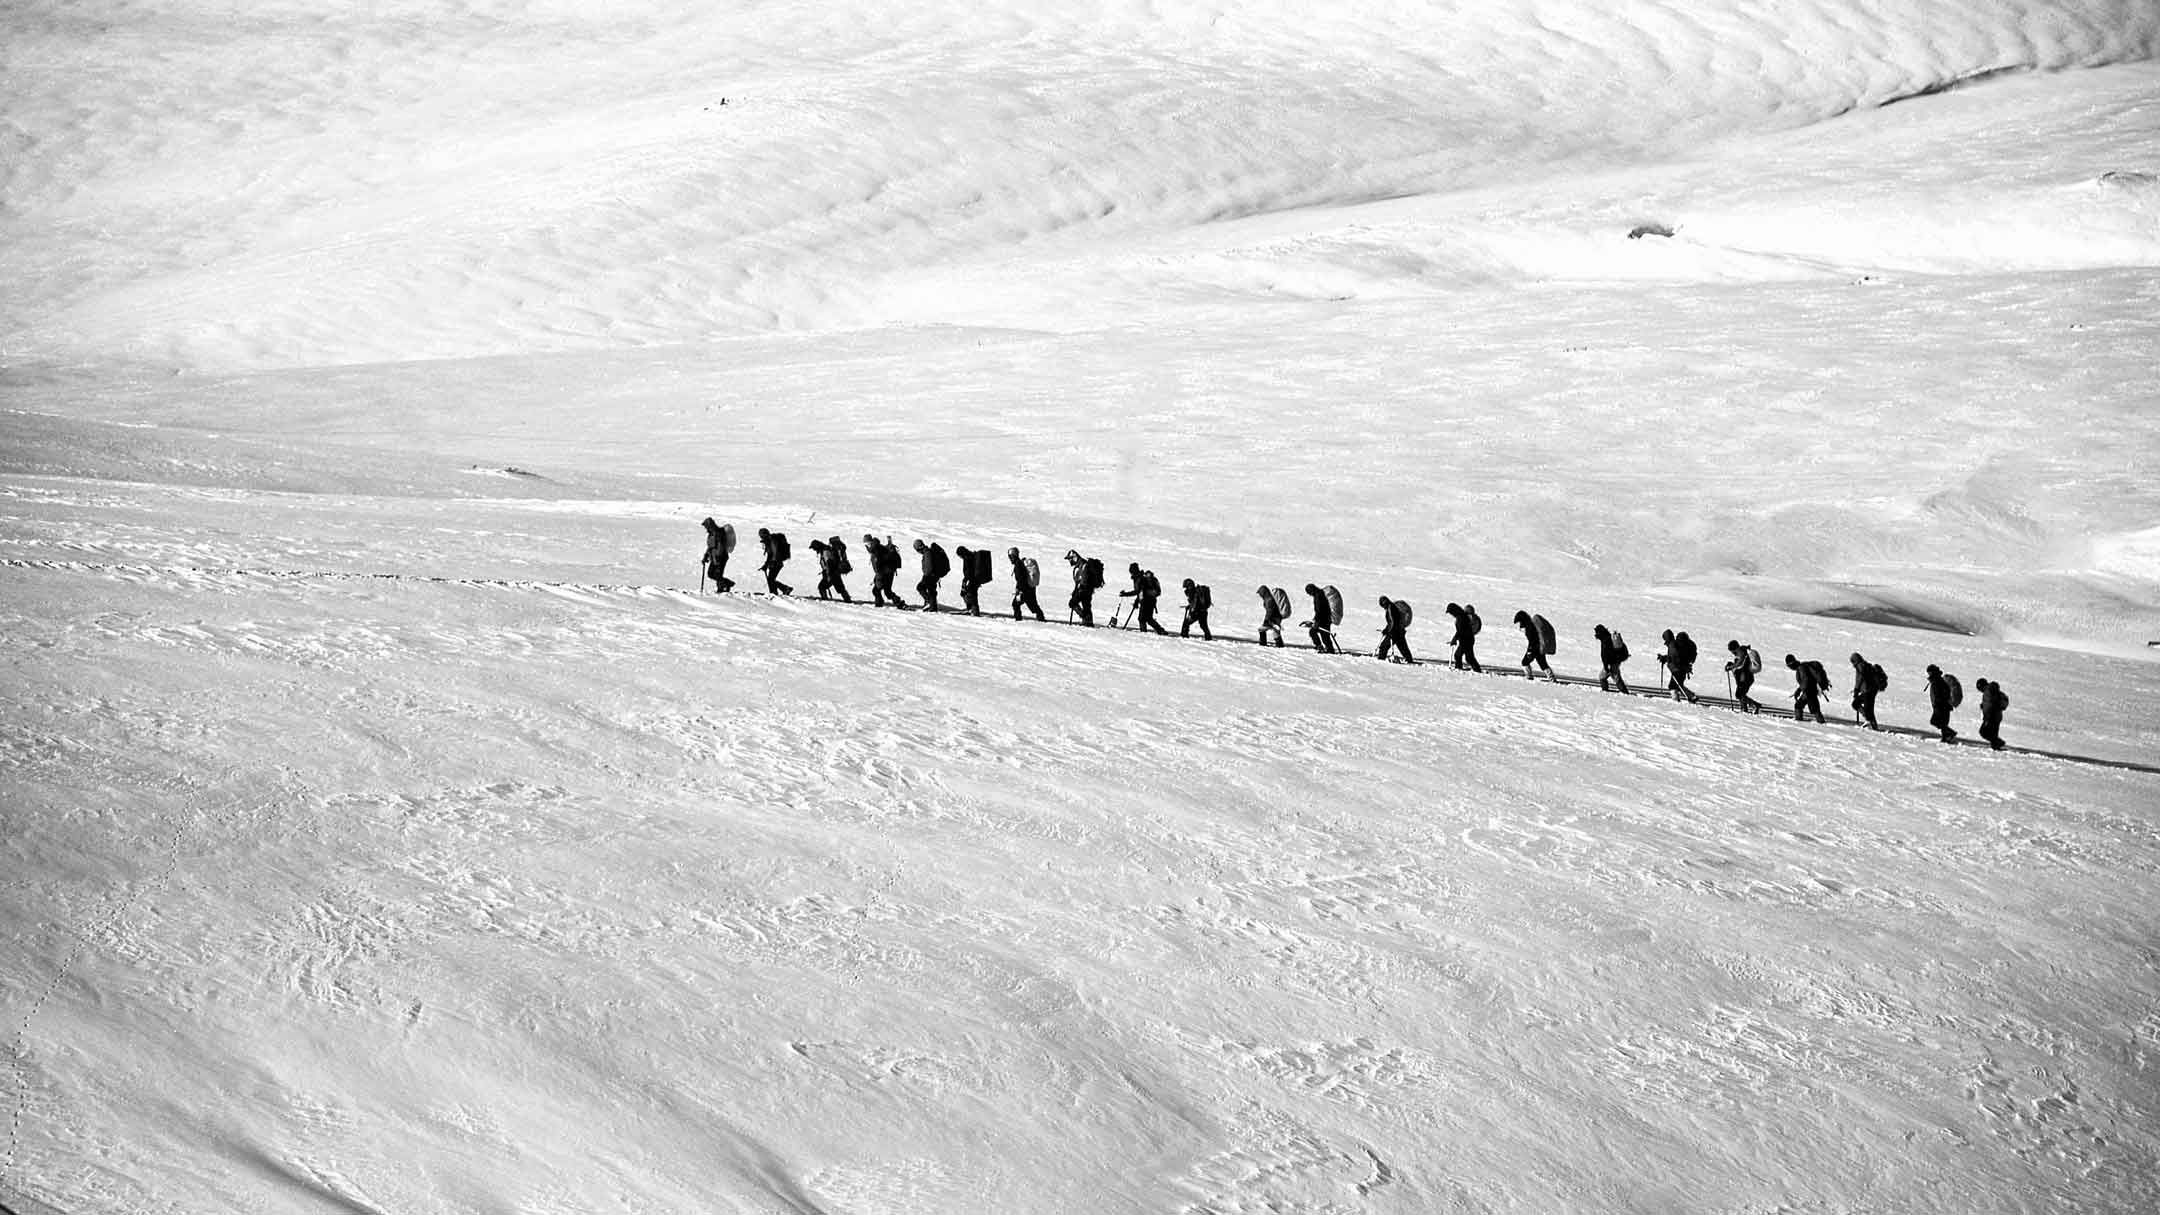 Travail d'équipe - Cordée d'alpinistes dans la montagne enneigée